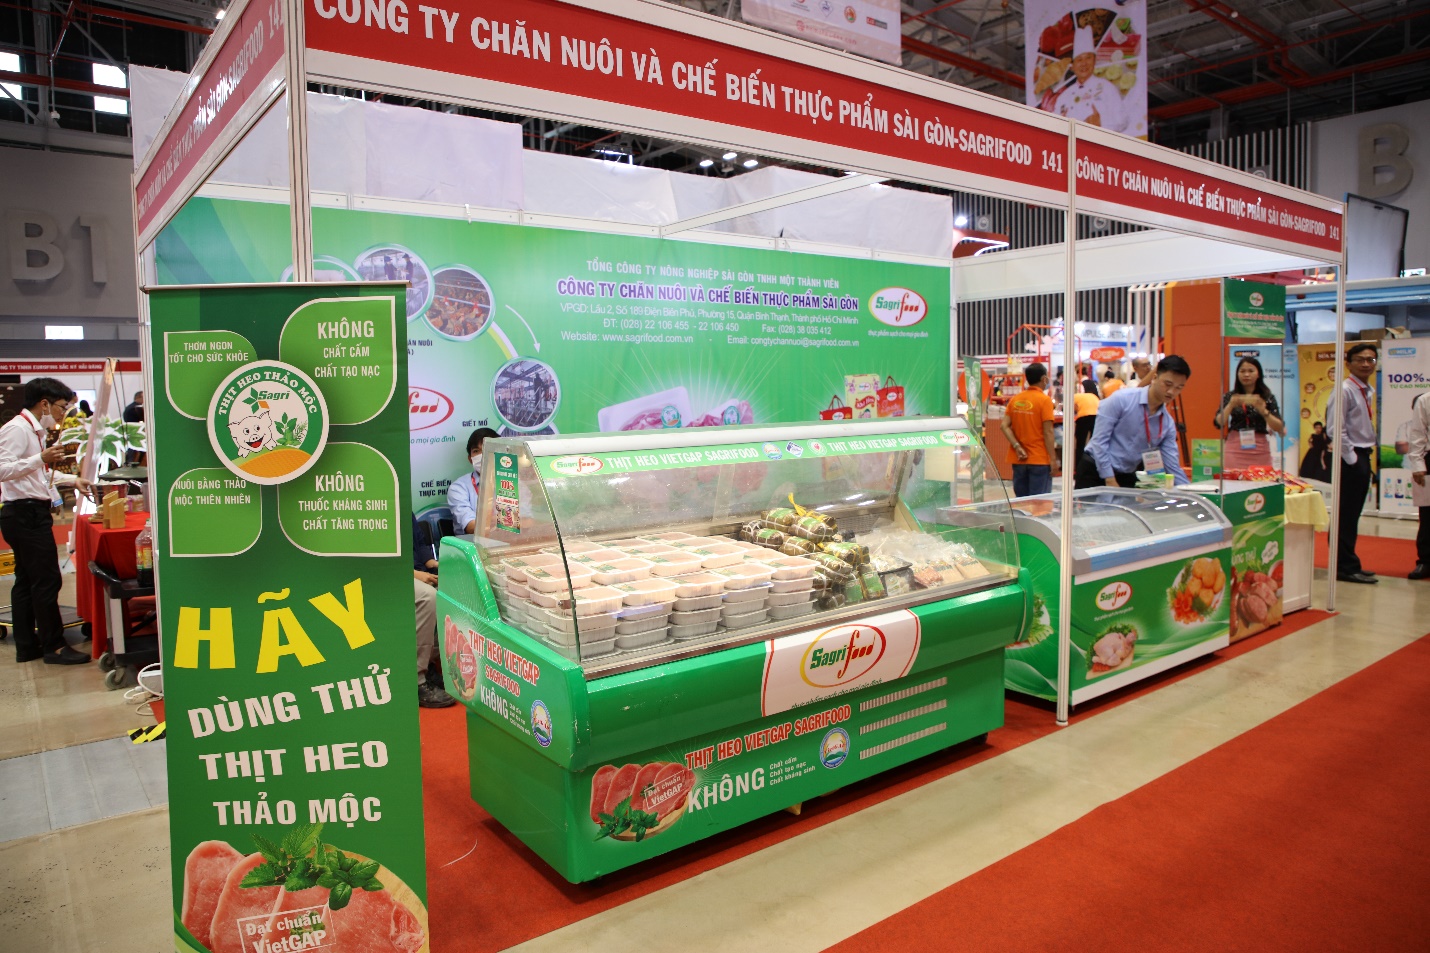 Sagri - Tham gia triển lãm quốc tế ngành lương thực thực phẩm Thành phố Hồ Chí Minh (HCMC FOODEX 2022)